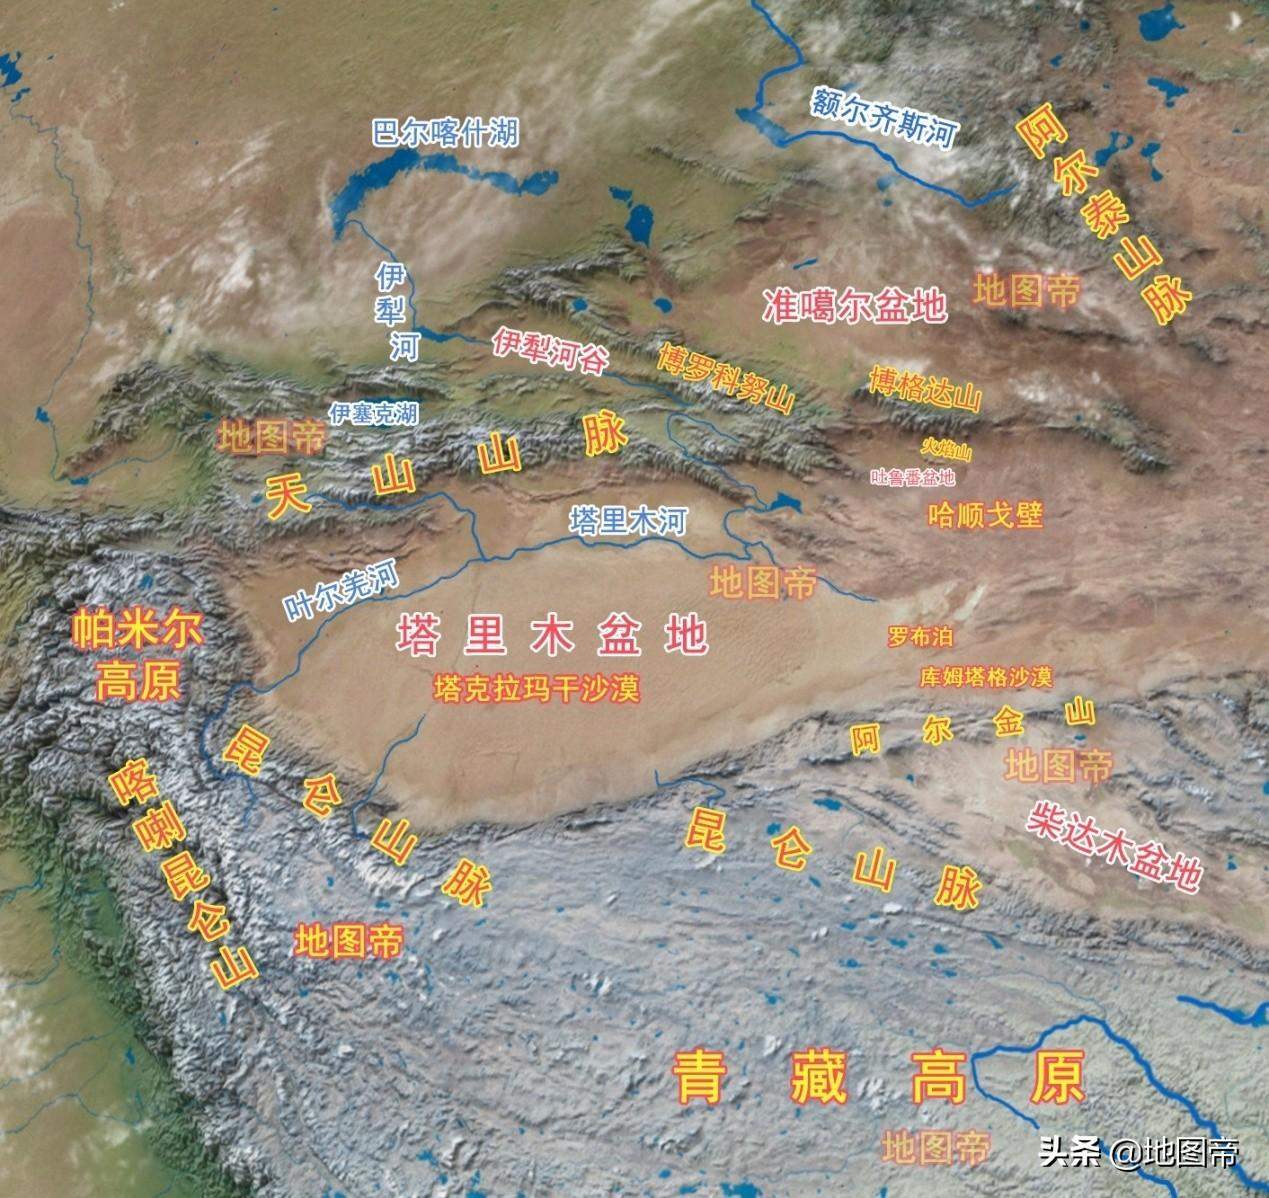 《西游记》中的火焰山真实存在吗？火焰山确实存在，在新疆吐鲁番盆地中-奇点